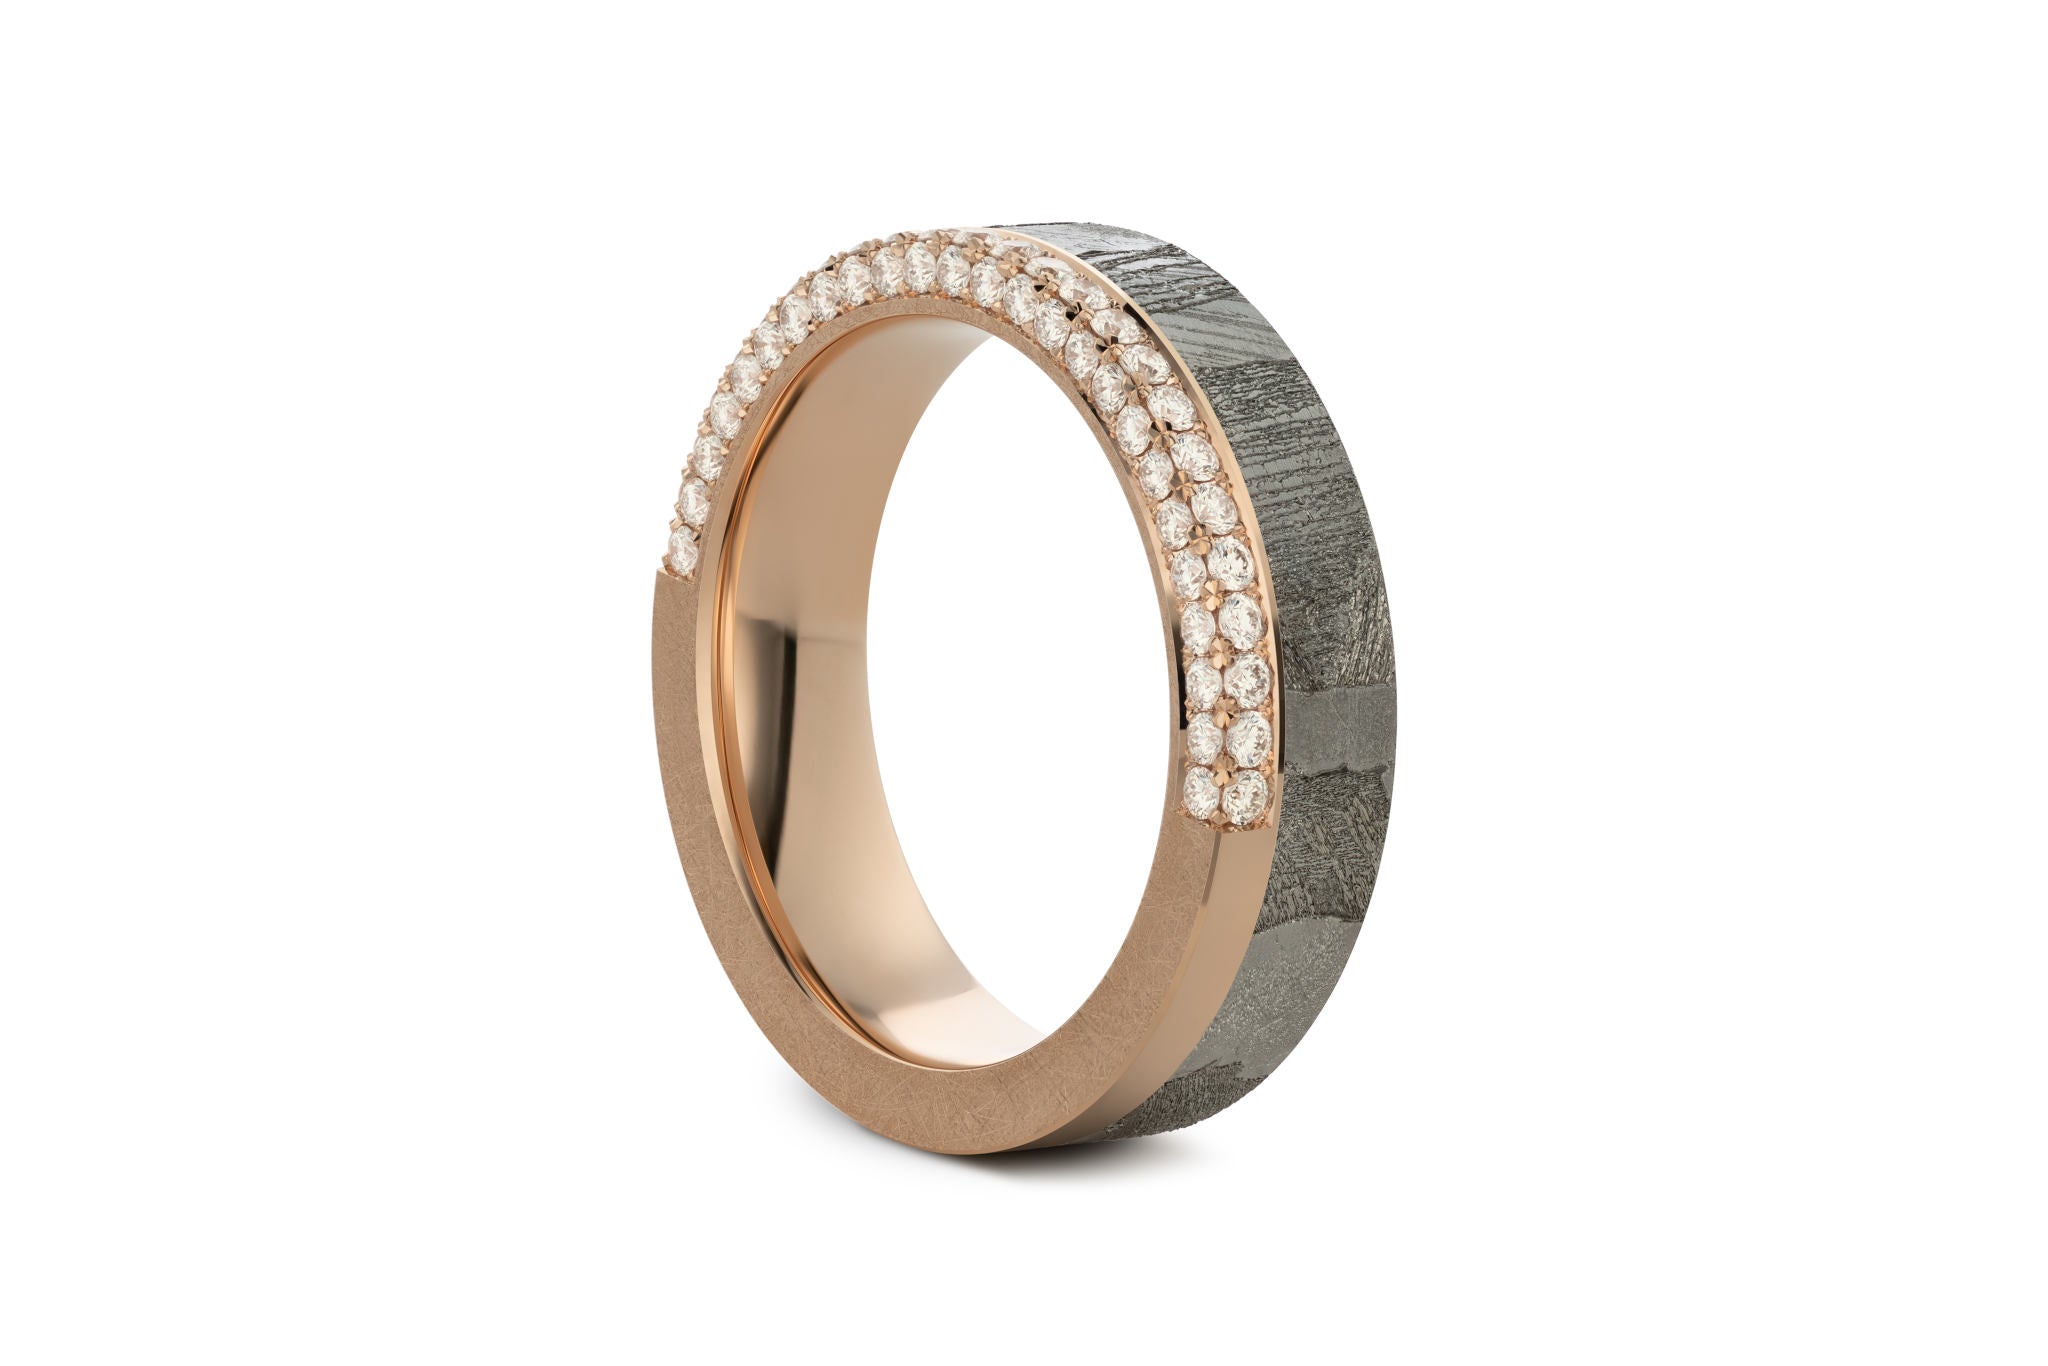 Eleganter Ring aus Meteorit mit wunderschönem metallisch glänzenden Widmanstätten Muster. Innenseite aus Gold. Kantige Ecken und seitlich ein doppeltes mit Brillanten besetztes Band, das um den halben Ring läuft. Seitlich aufgenommen